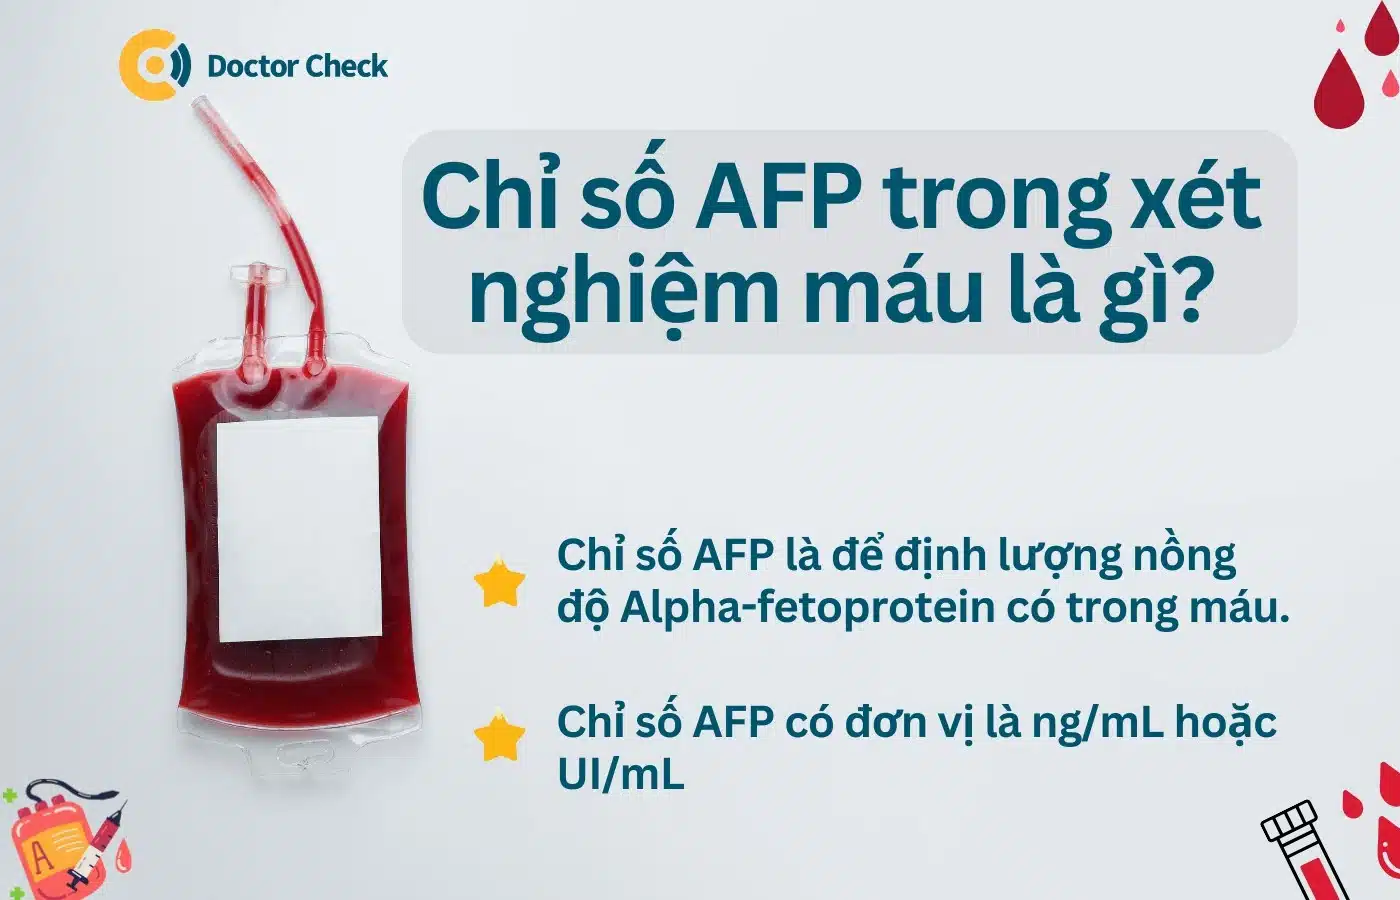 Ý nghĩa chỉ số xét nghiệm AFP trong máu là gì?